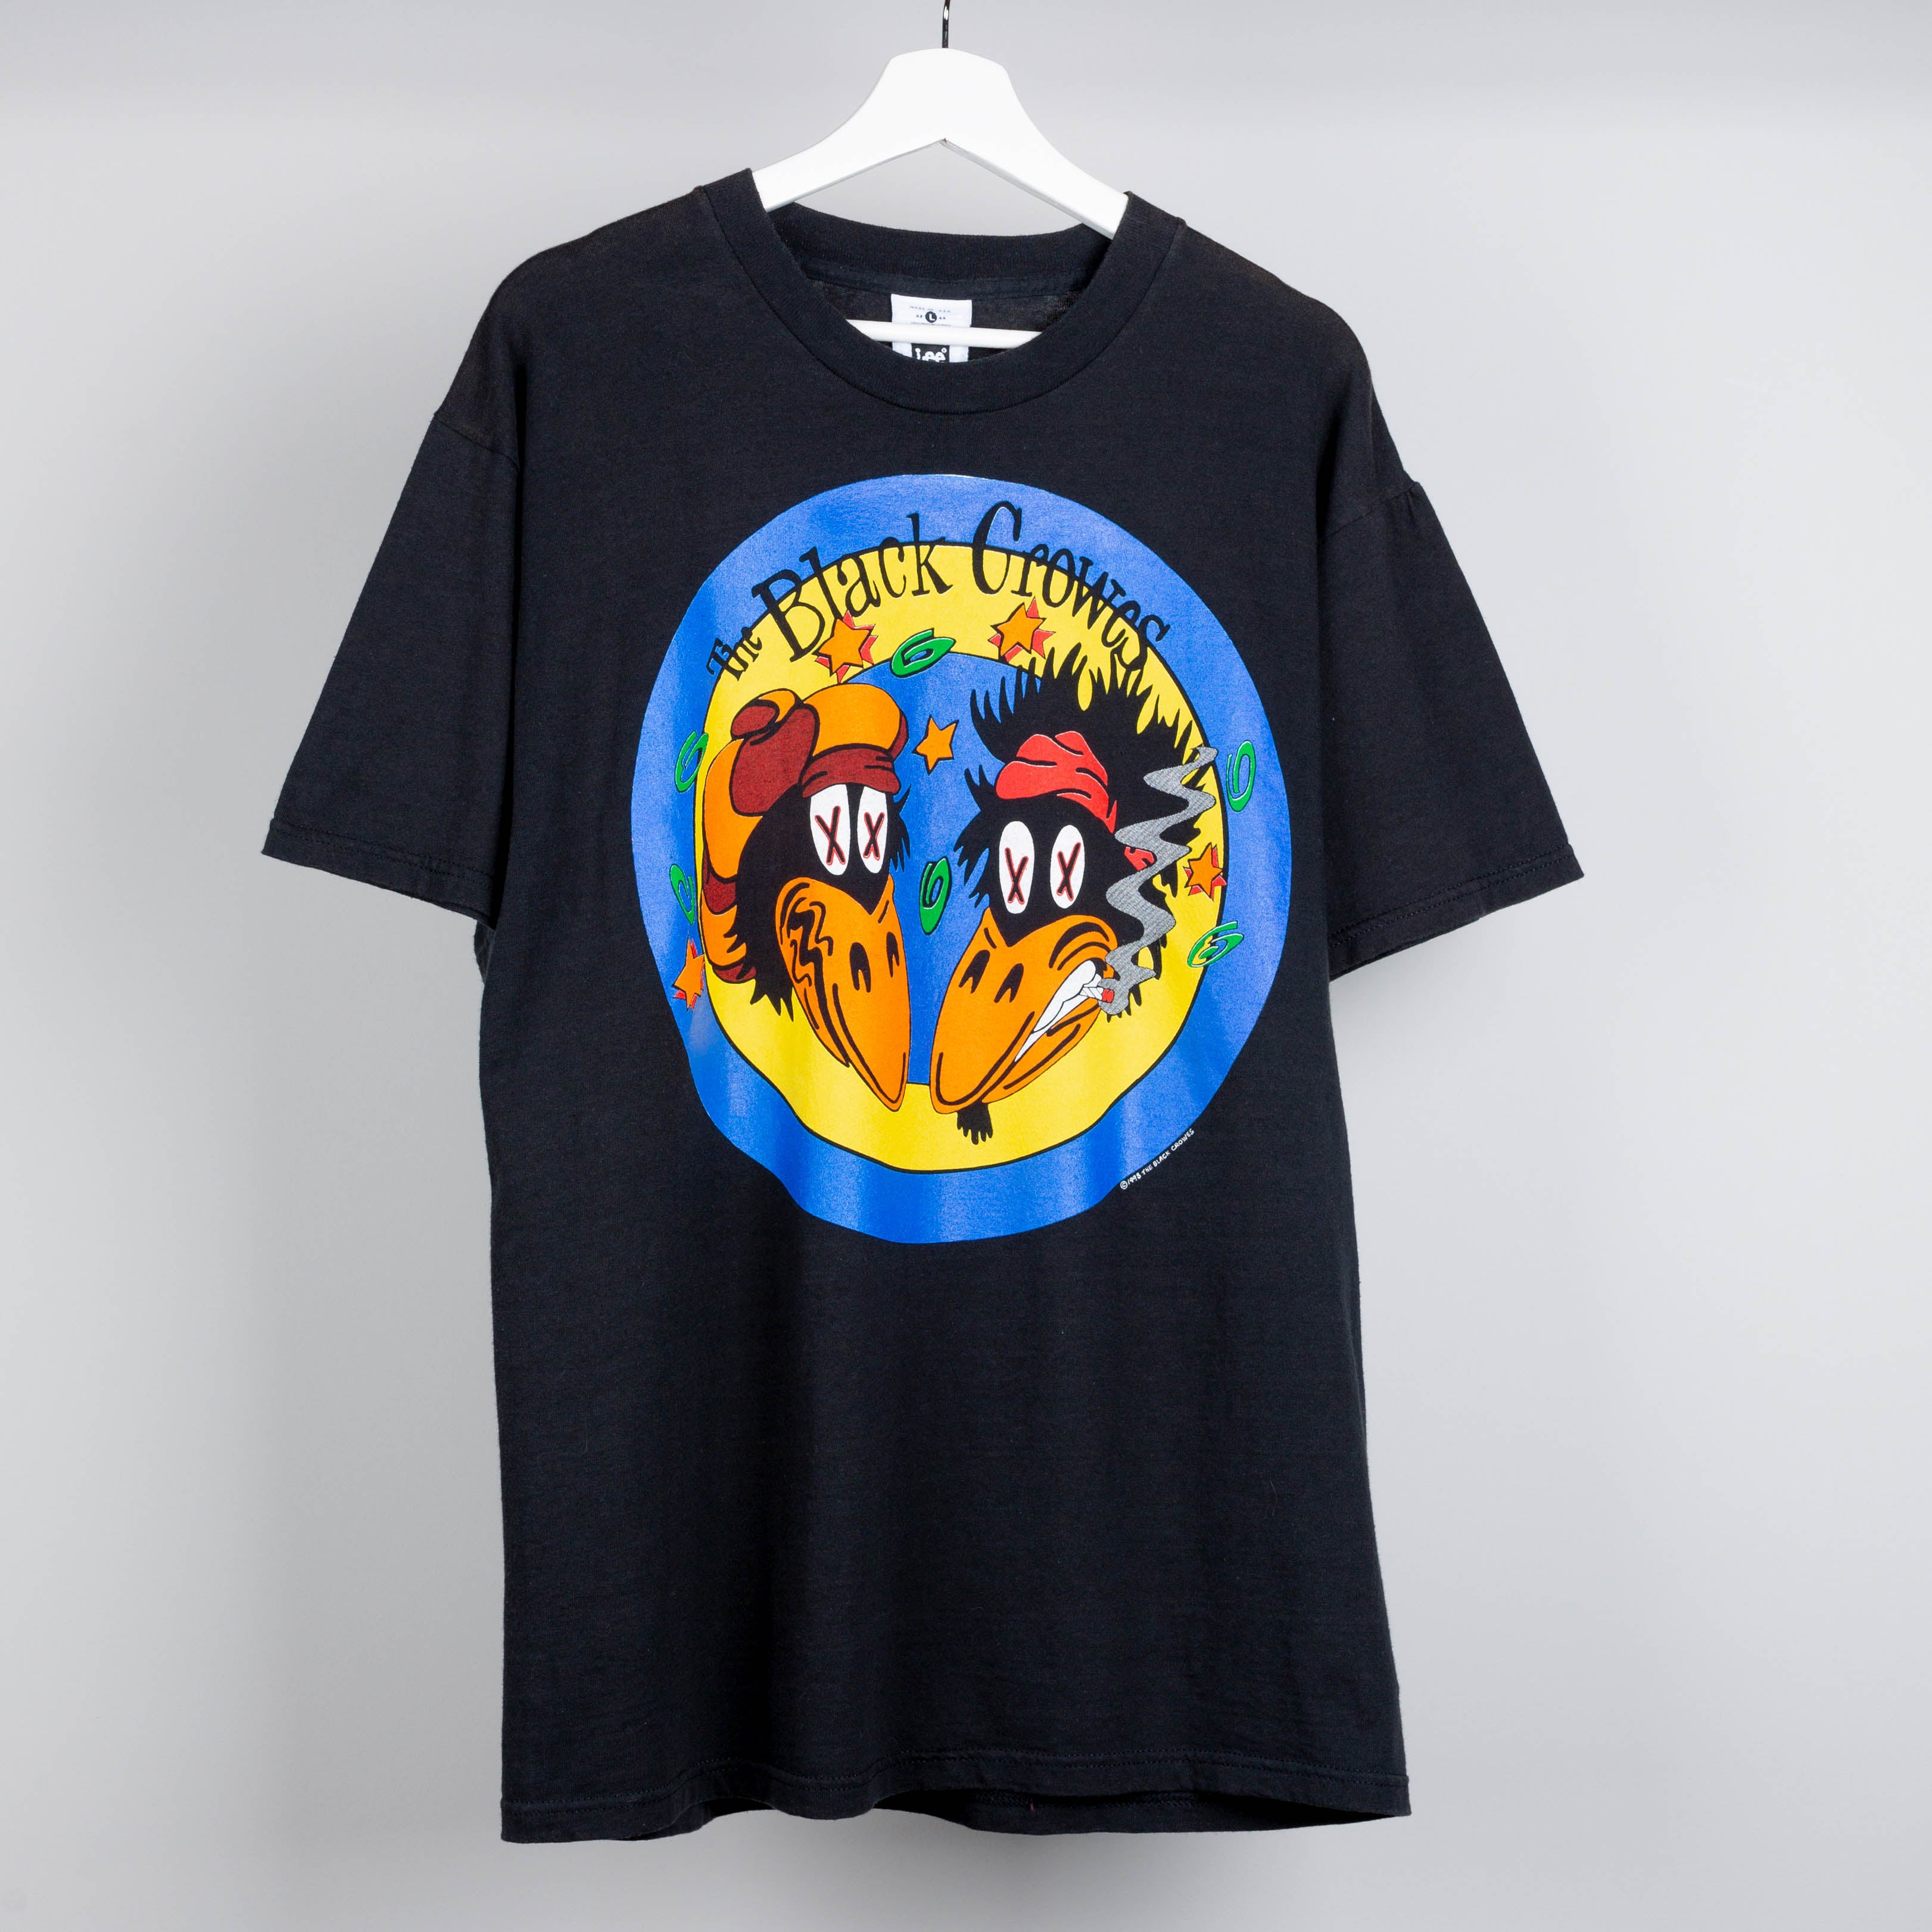 1993 The Black Crowes Tour T-Shirt Size L